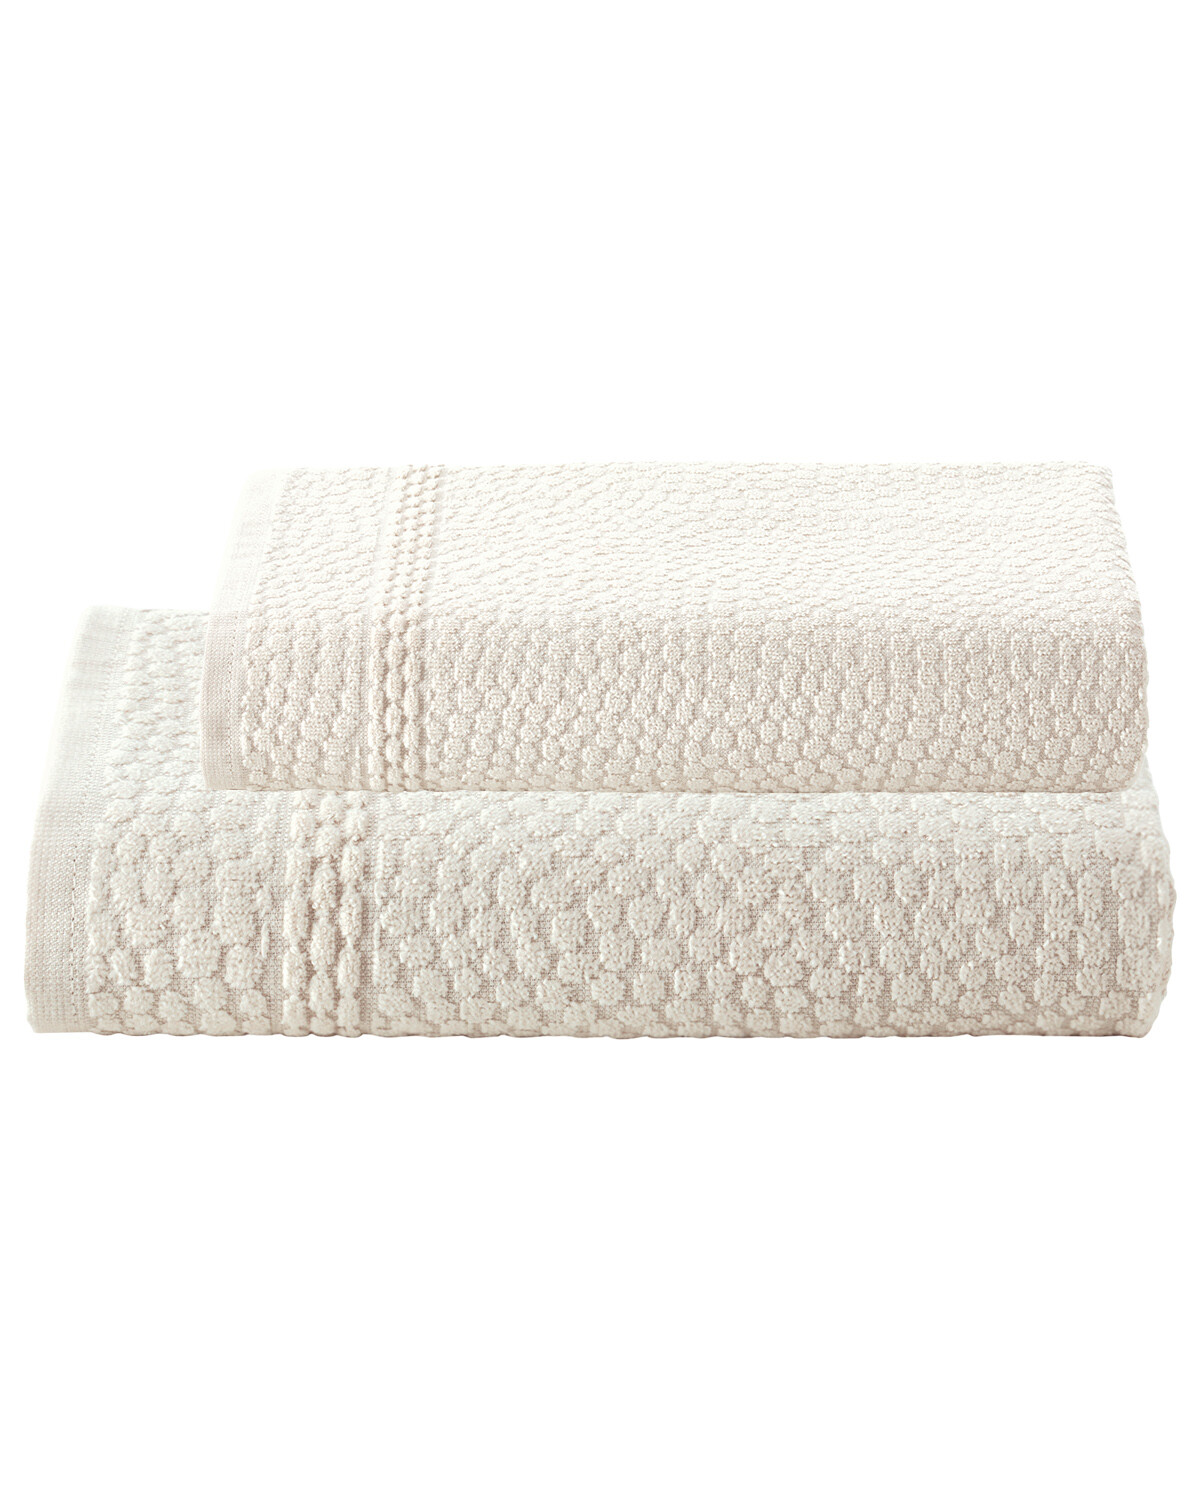 Velutti Magallanes - Juego de toallas Premium 2 piezas Praga 100% algodón  600 grs Toalla baño: 70x140 Toalla mano: 50x90 $14.990 🛀 🧖‍♀️🧖🏼  Disponible en colores borgoña, blanco y verde. Si deseas